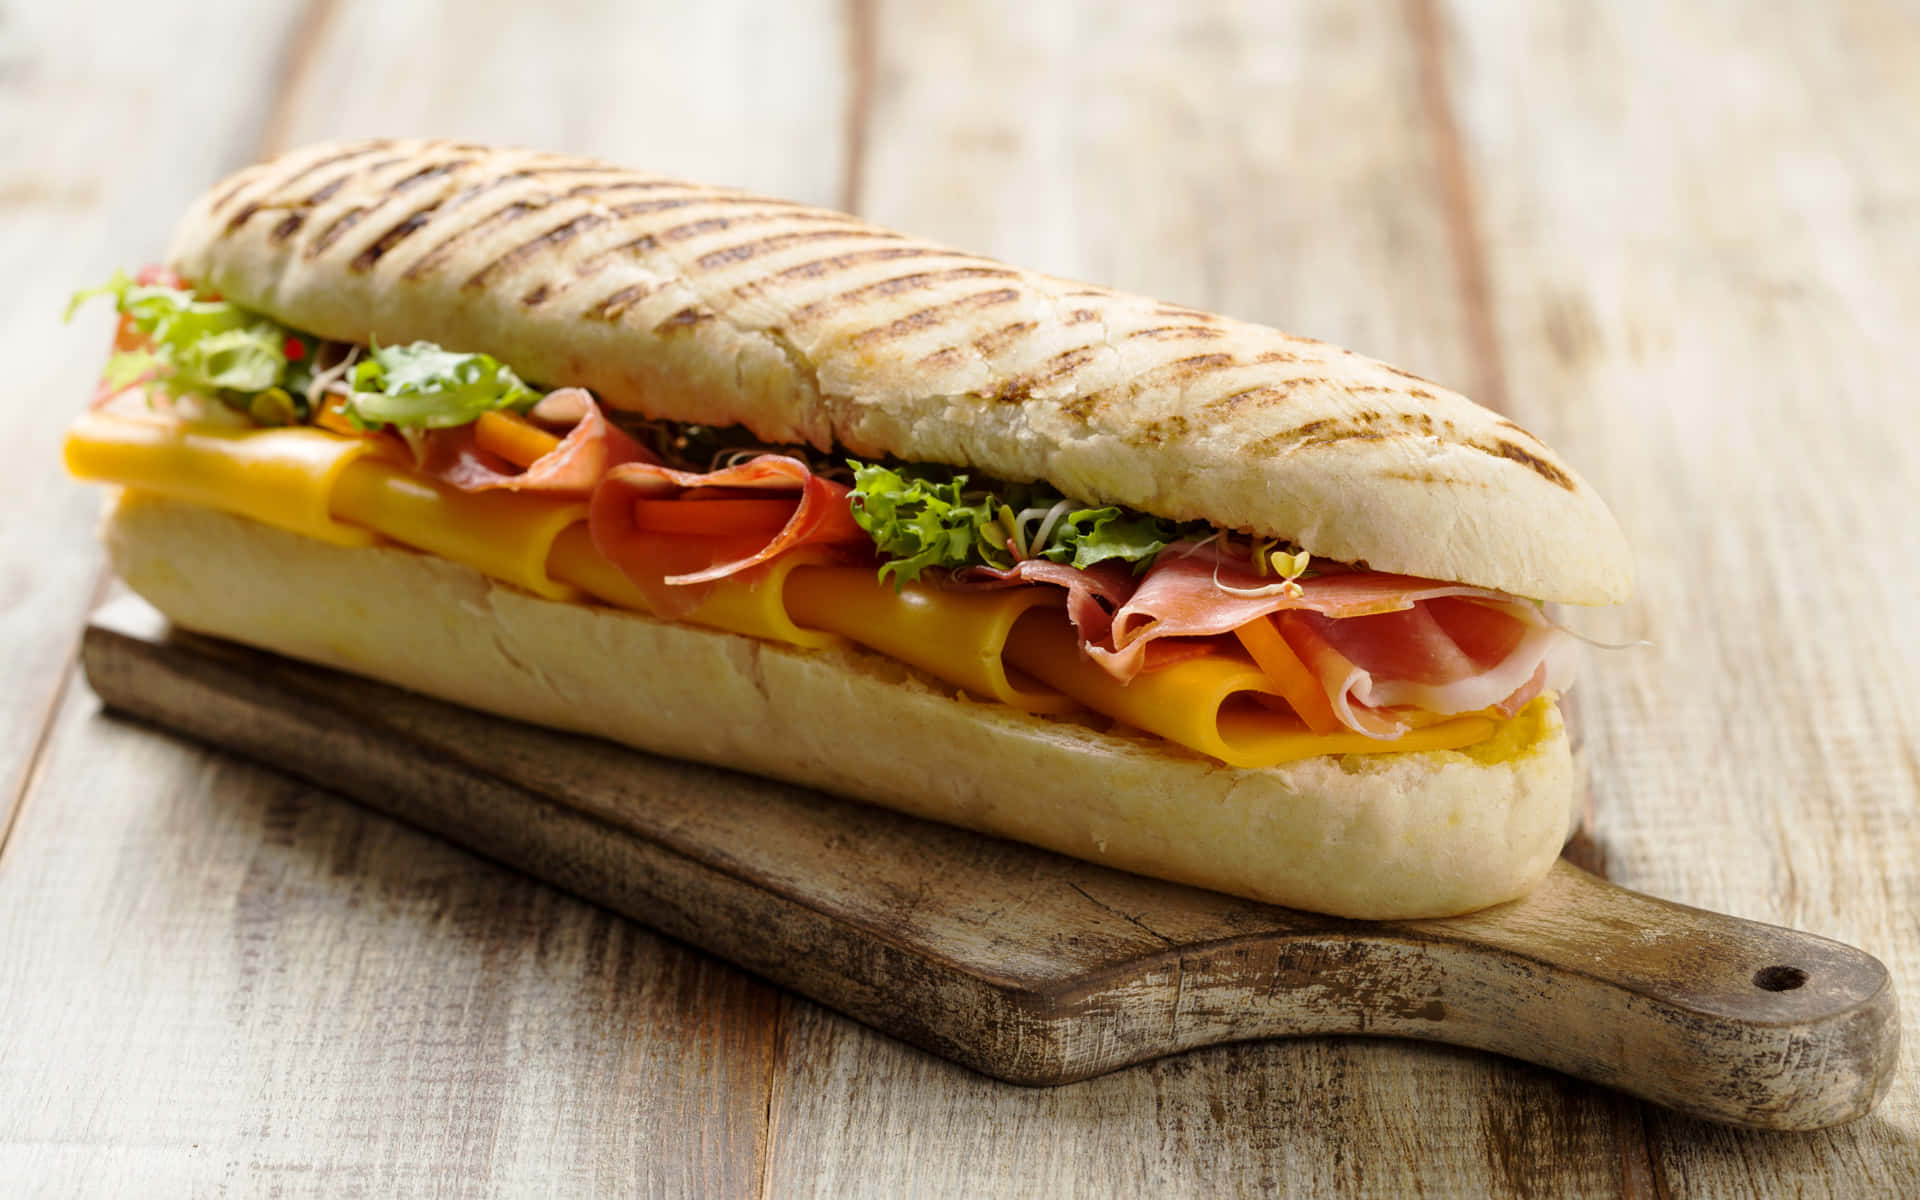 Einköstliches Sandwich Gefüllt Mit Leckeren Belägen.